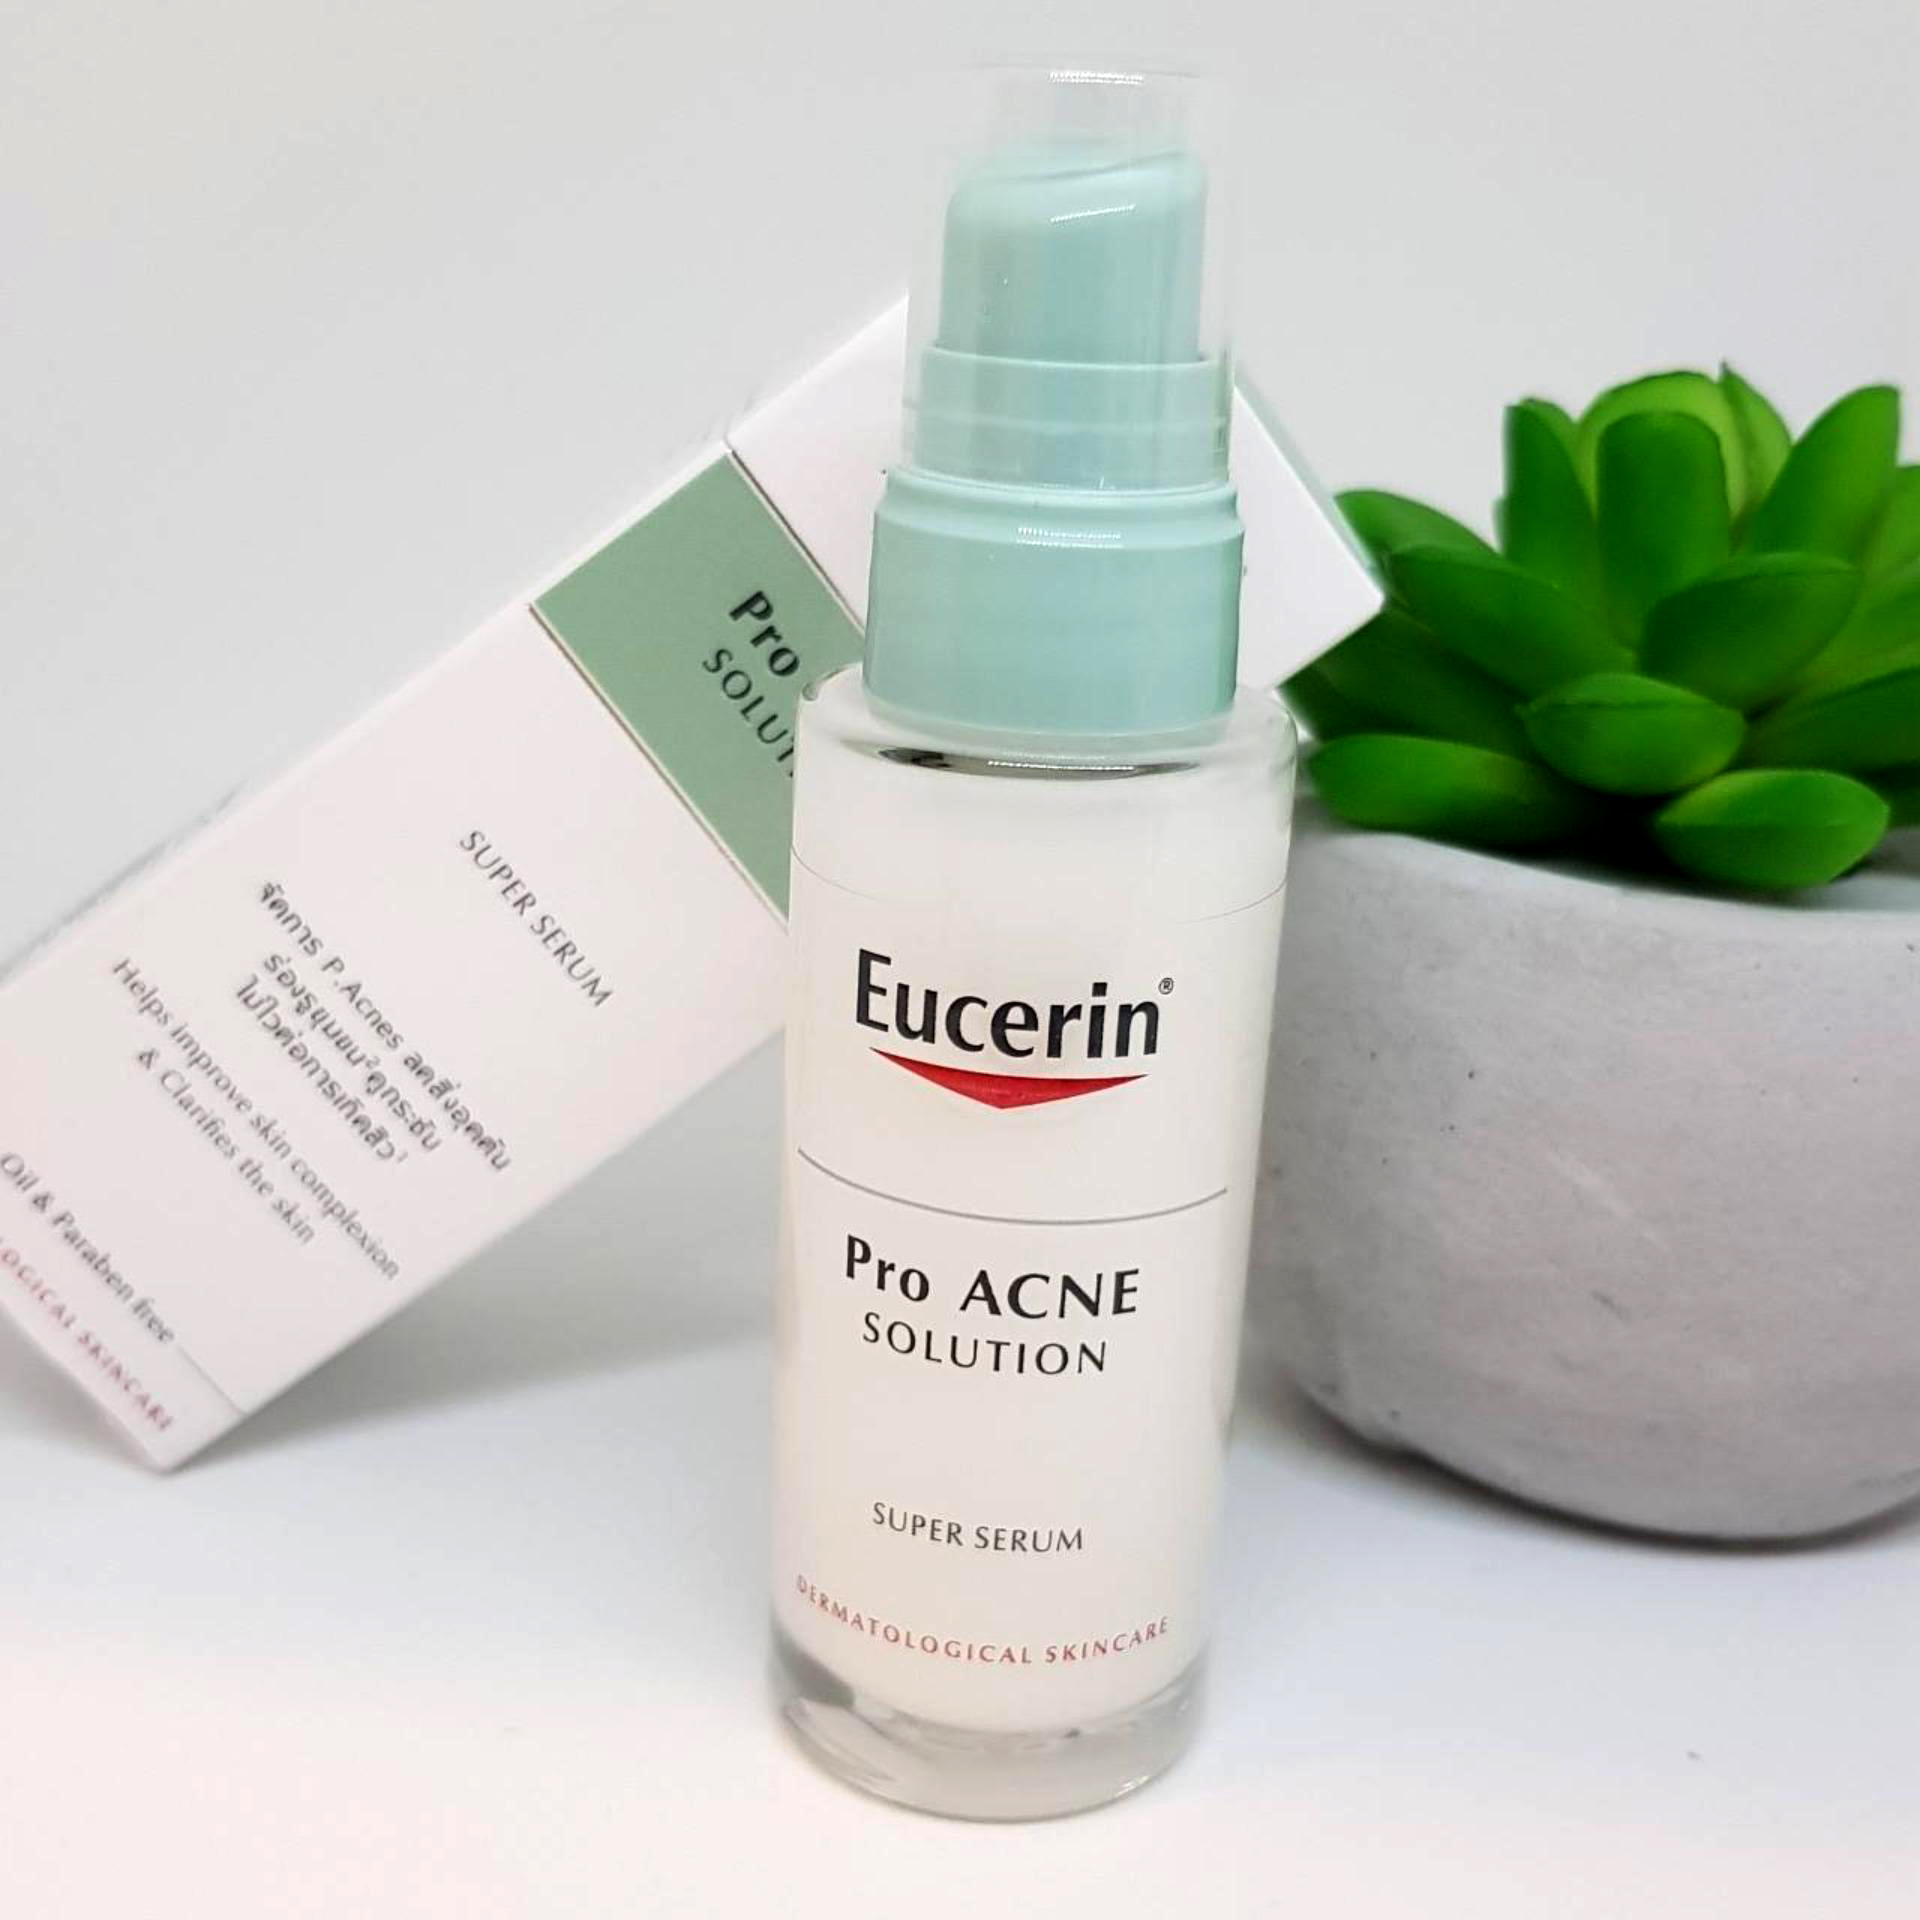 EUCERIN, Tinh Chất Trị Mụn Trứng Cá, Mờ Sẹo Eucerin Pro Acne Solution 30ml | Watsons Vietnam